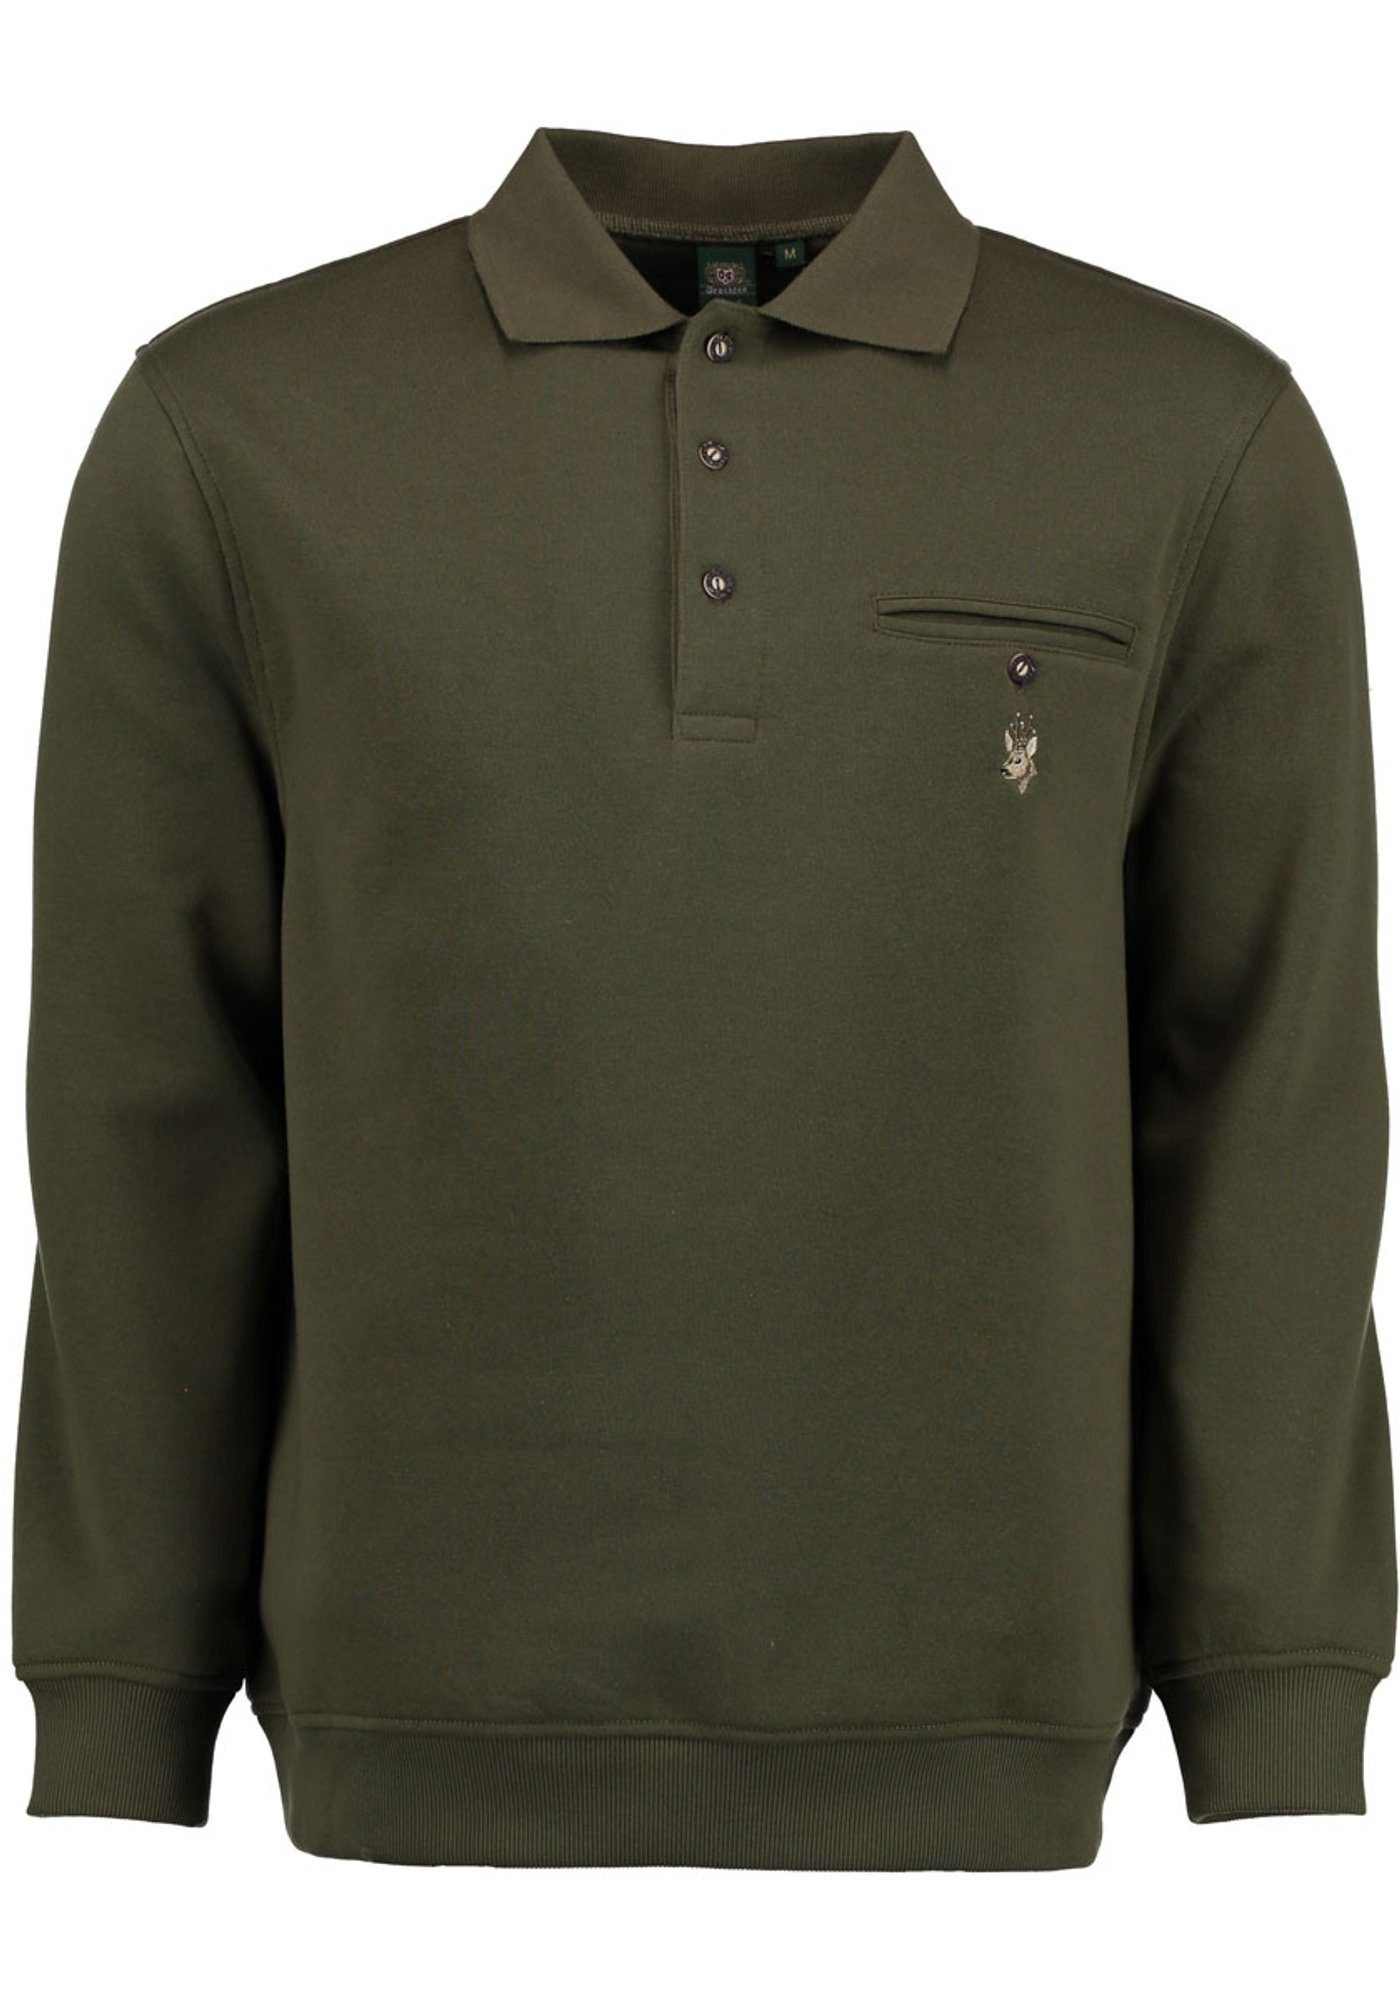 Kragen und mit Brusttasche Rehkopf-Stickerei auf Rizapa OS-Trachten Sweatshirt Jagdsweatshirt